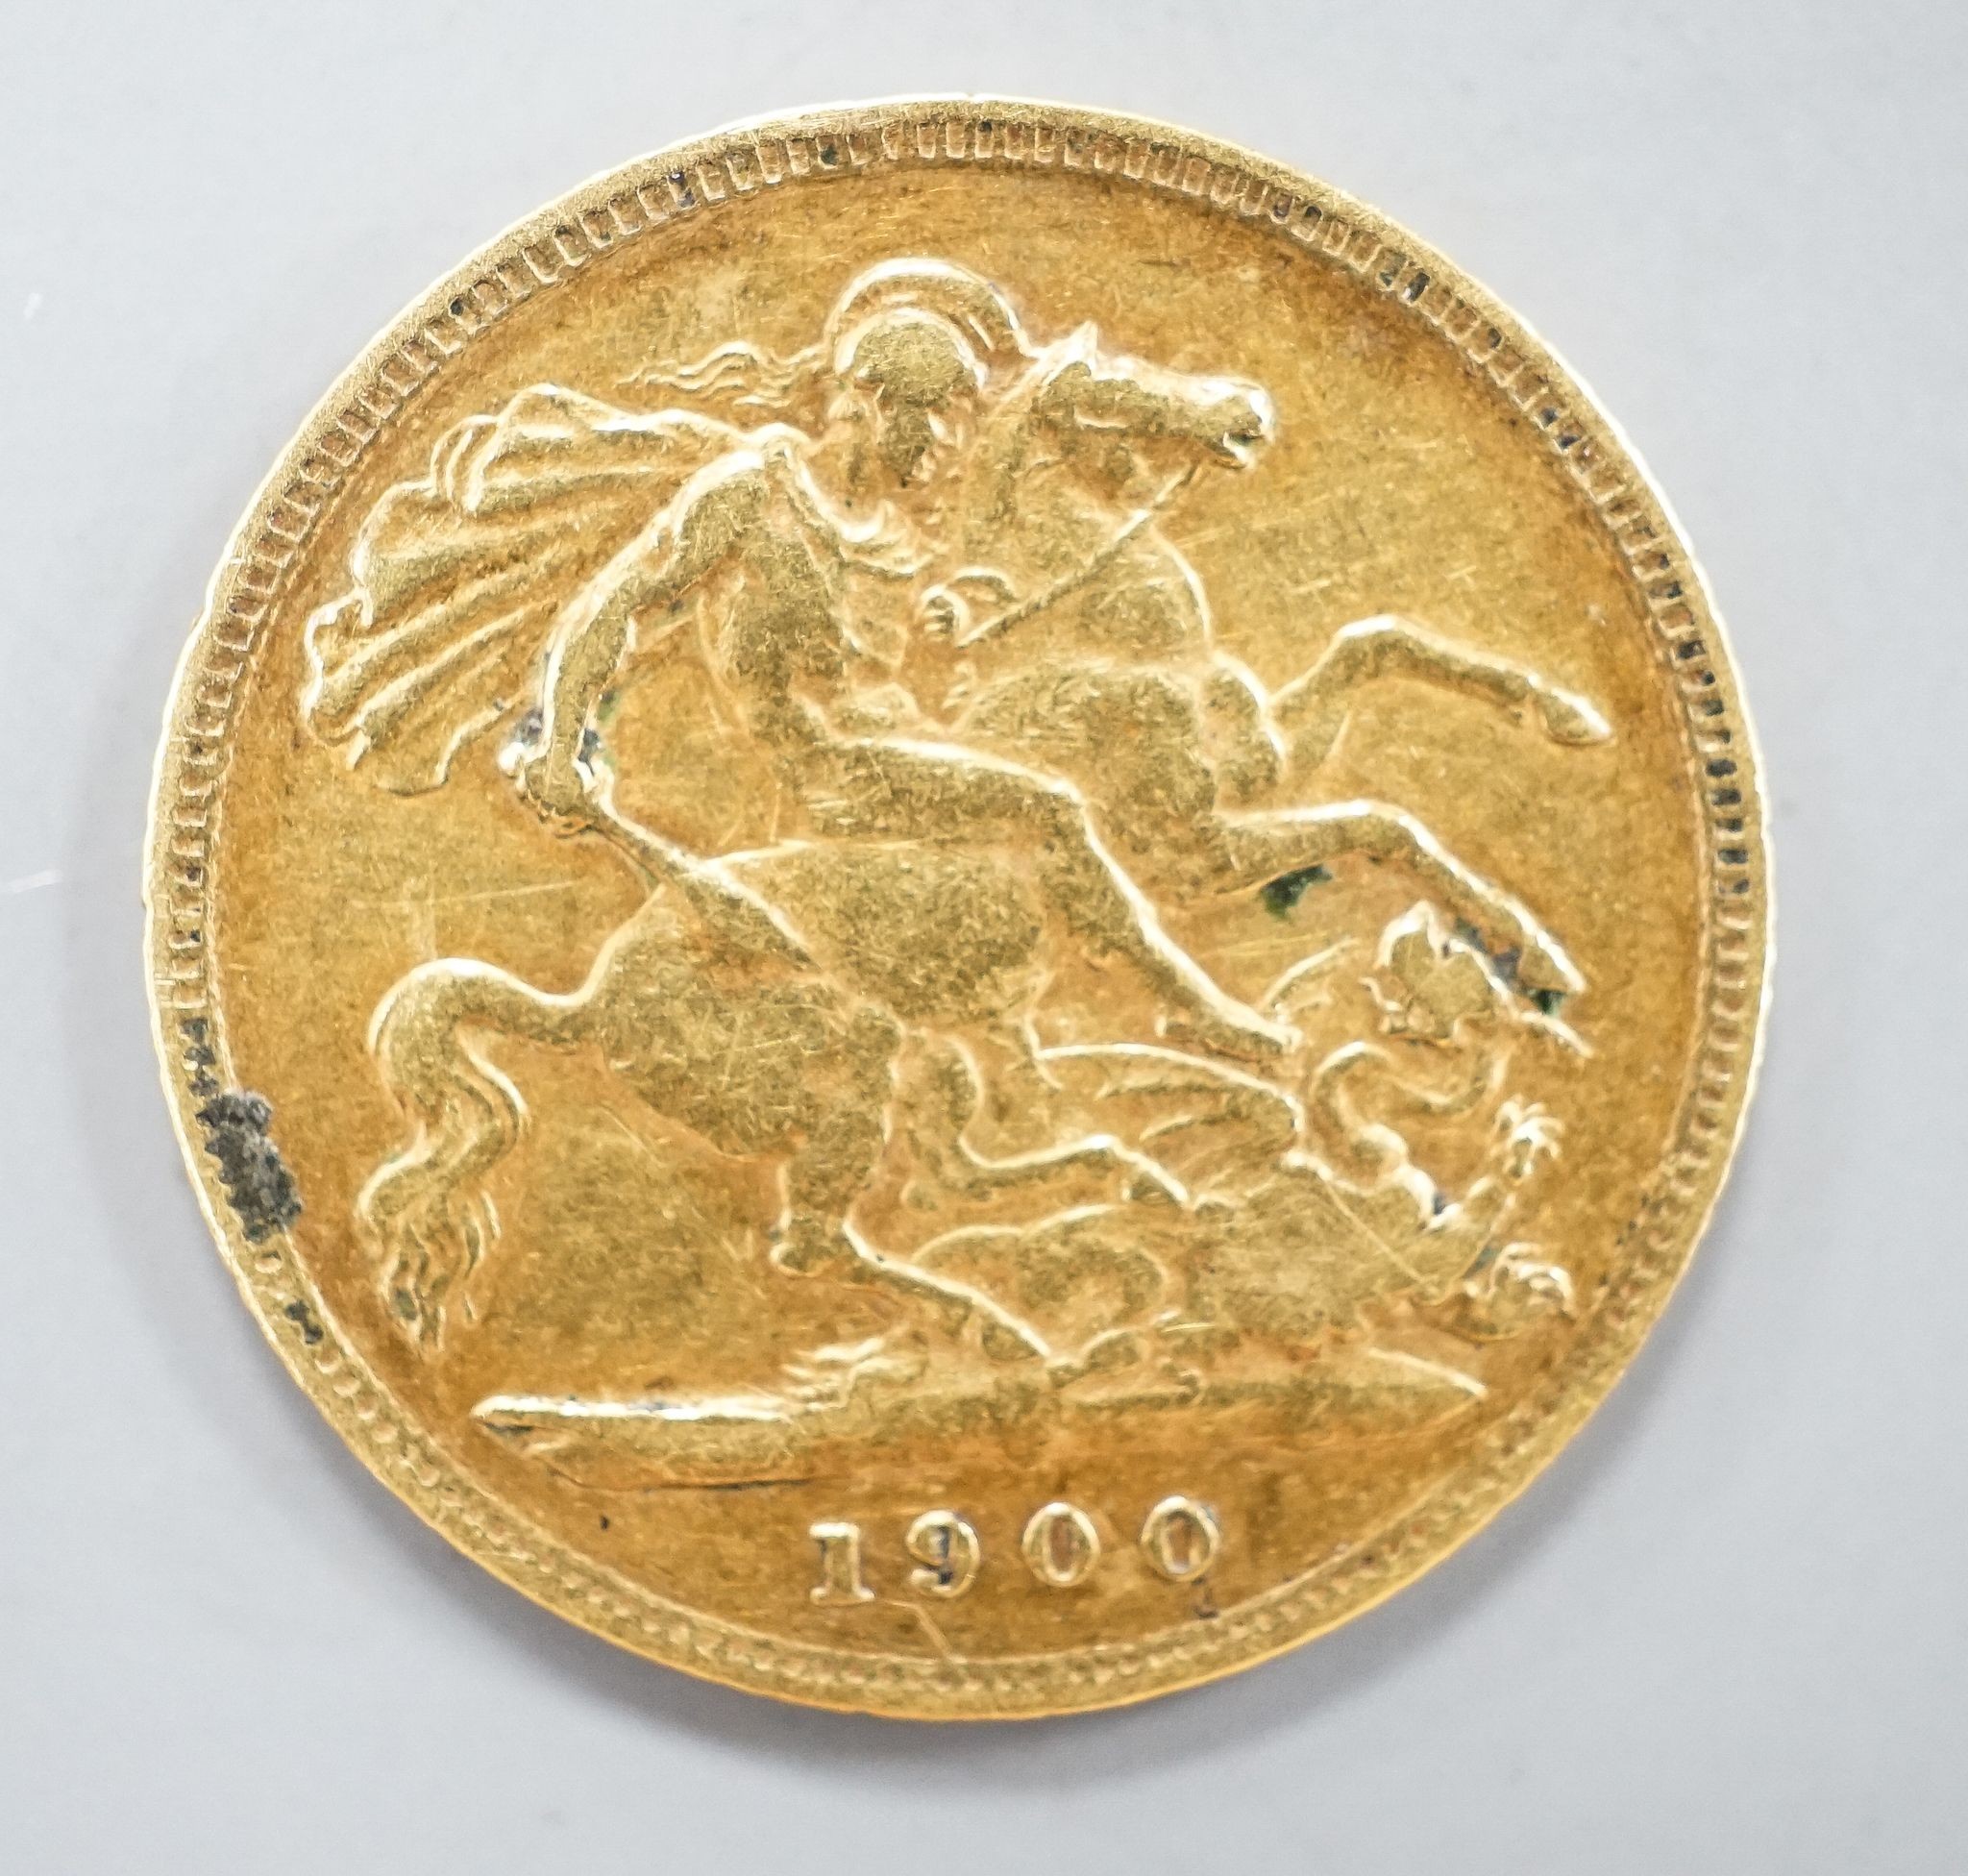 A Victoria gold 1900 half sovereign.